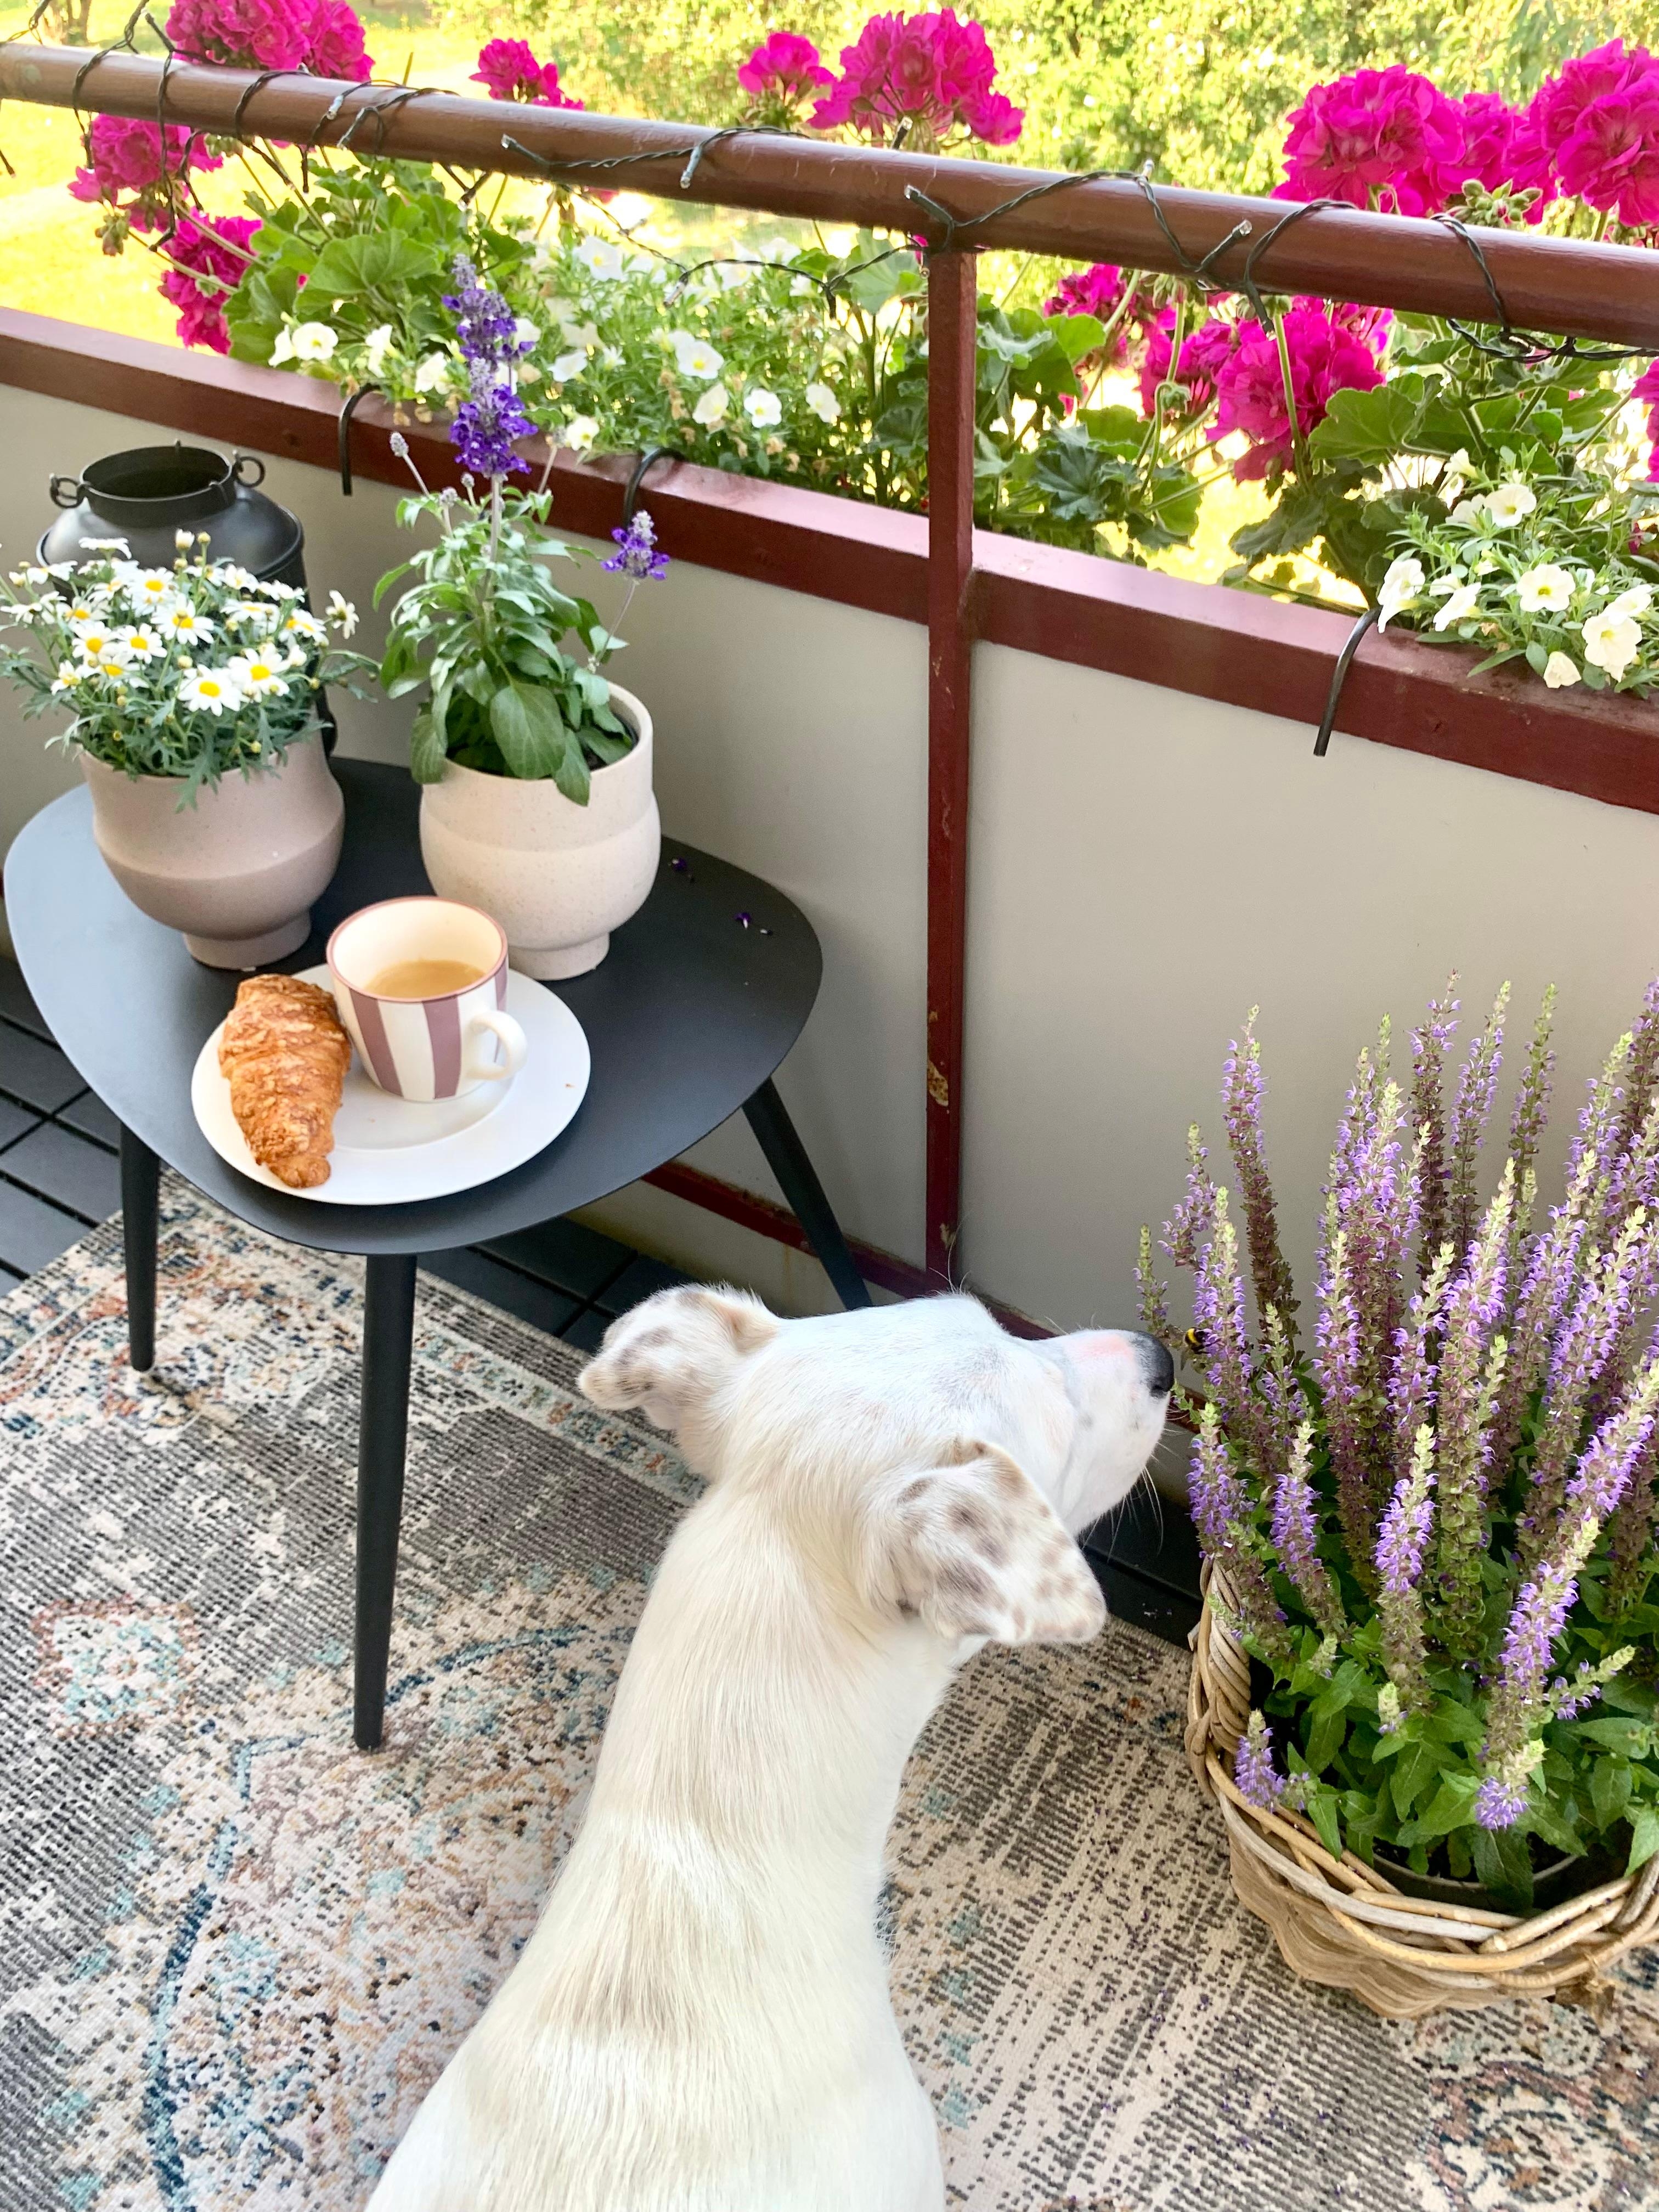 Kaffeeliebe ☕️
#morning #newweek #kaffeeliebe #livingchallenge #outdoor #flower #sommer #doglove